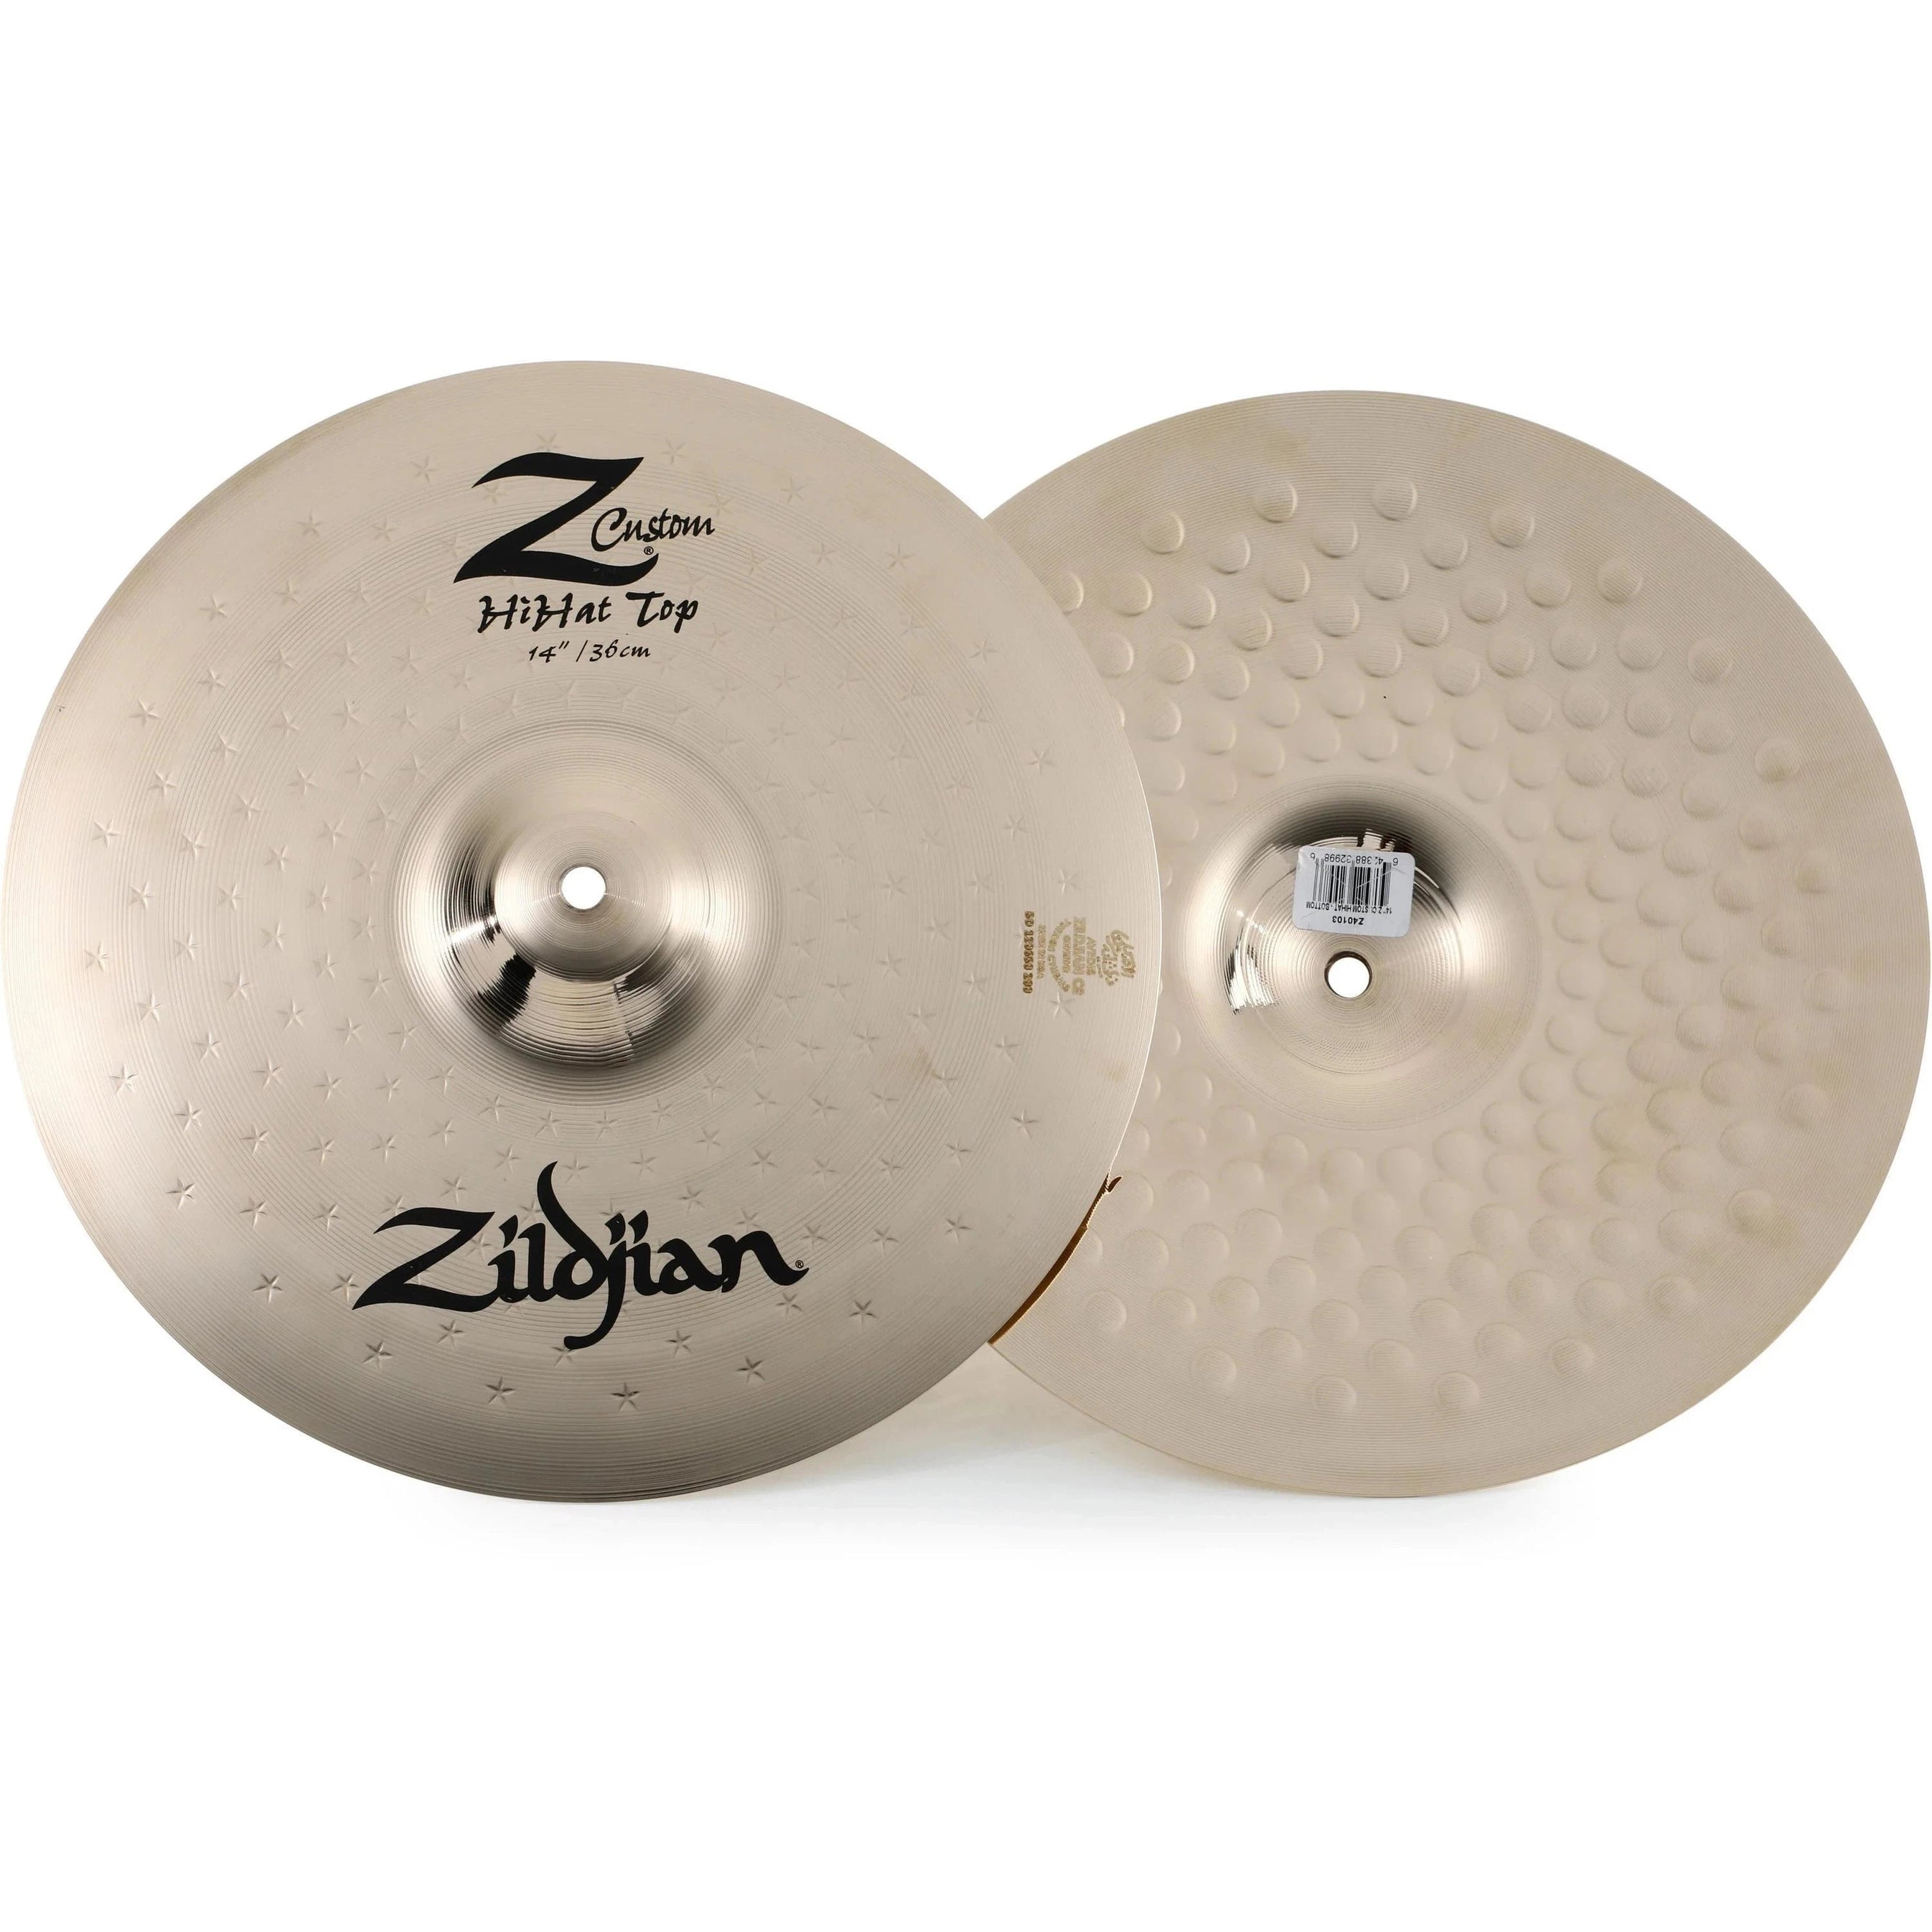 Hi-hat Cymbal Zildjian Z Custom-Mai Nguyên Music